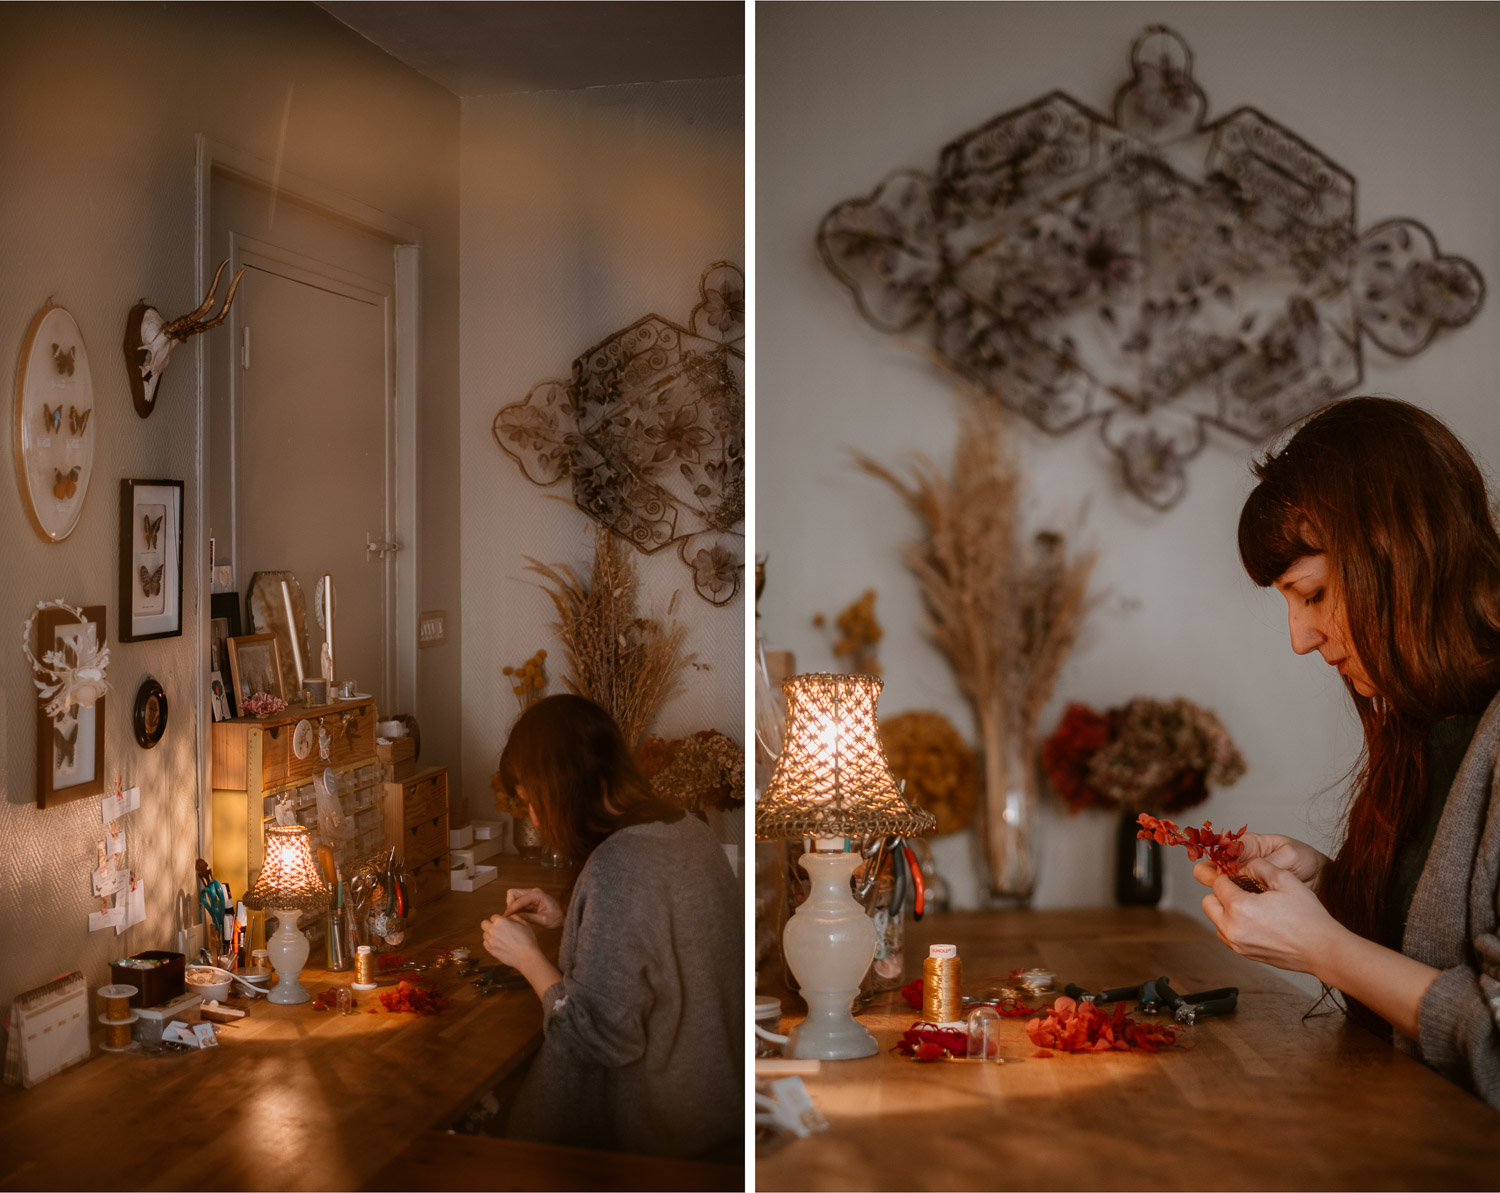 photographies d’une artiste créatrice dans son atelier boutique à Saumur